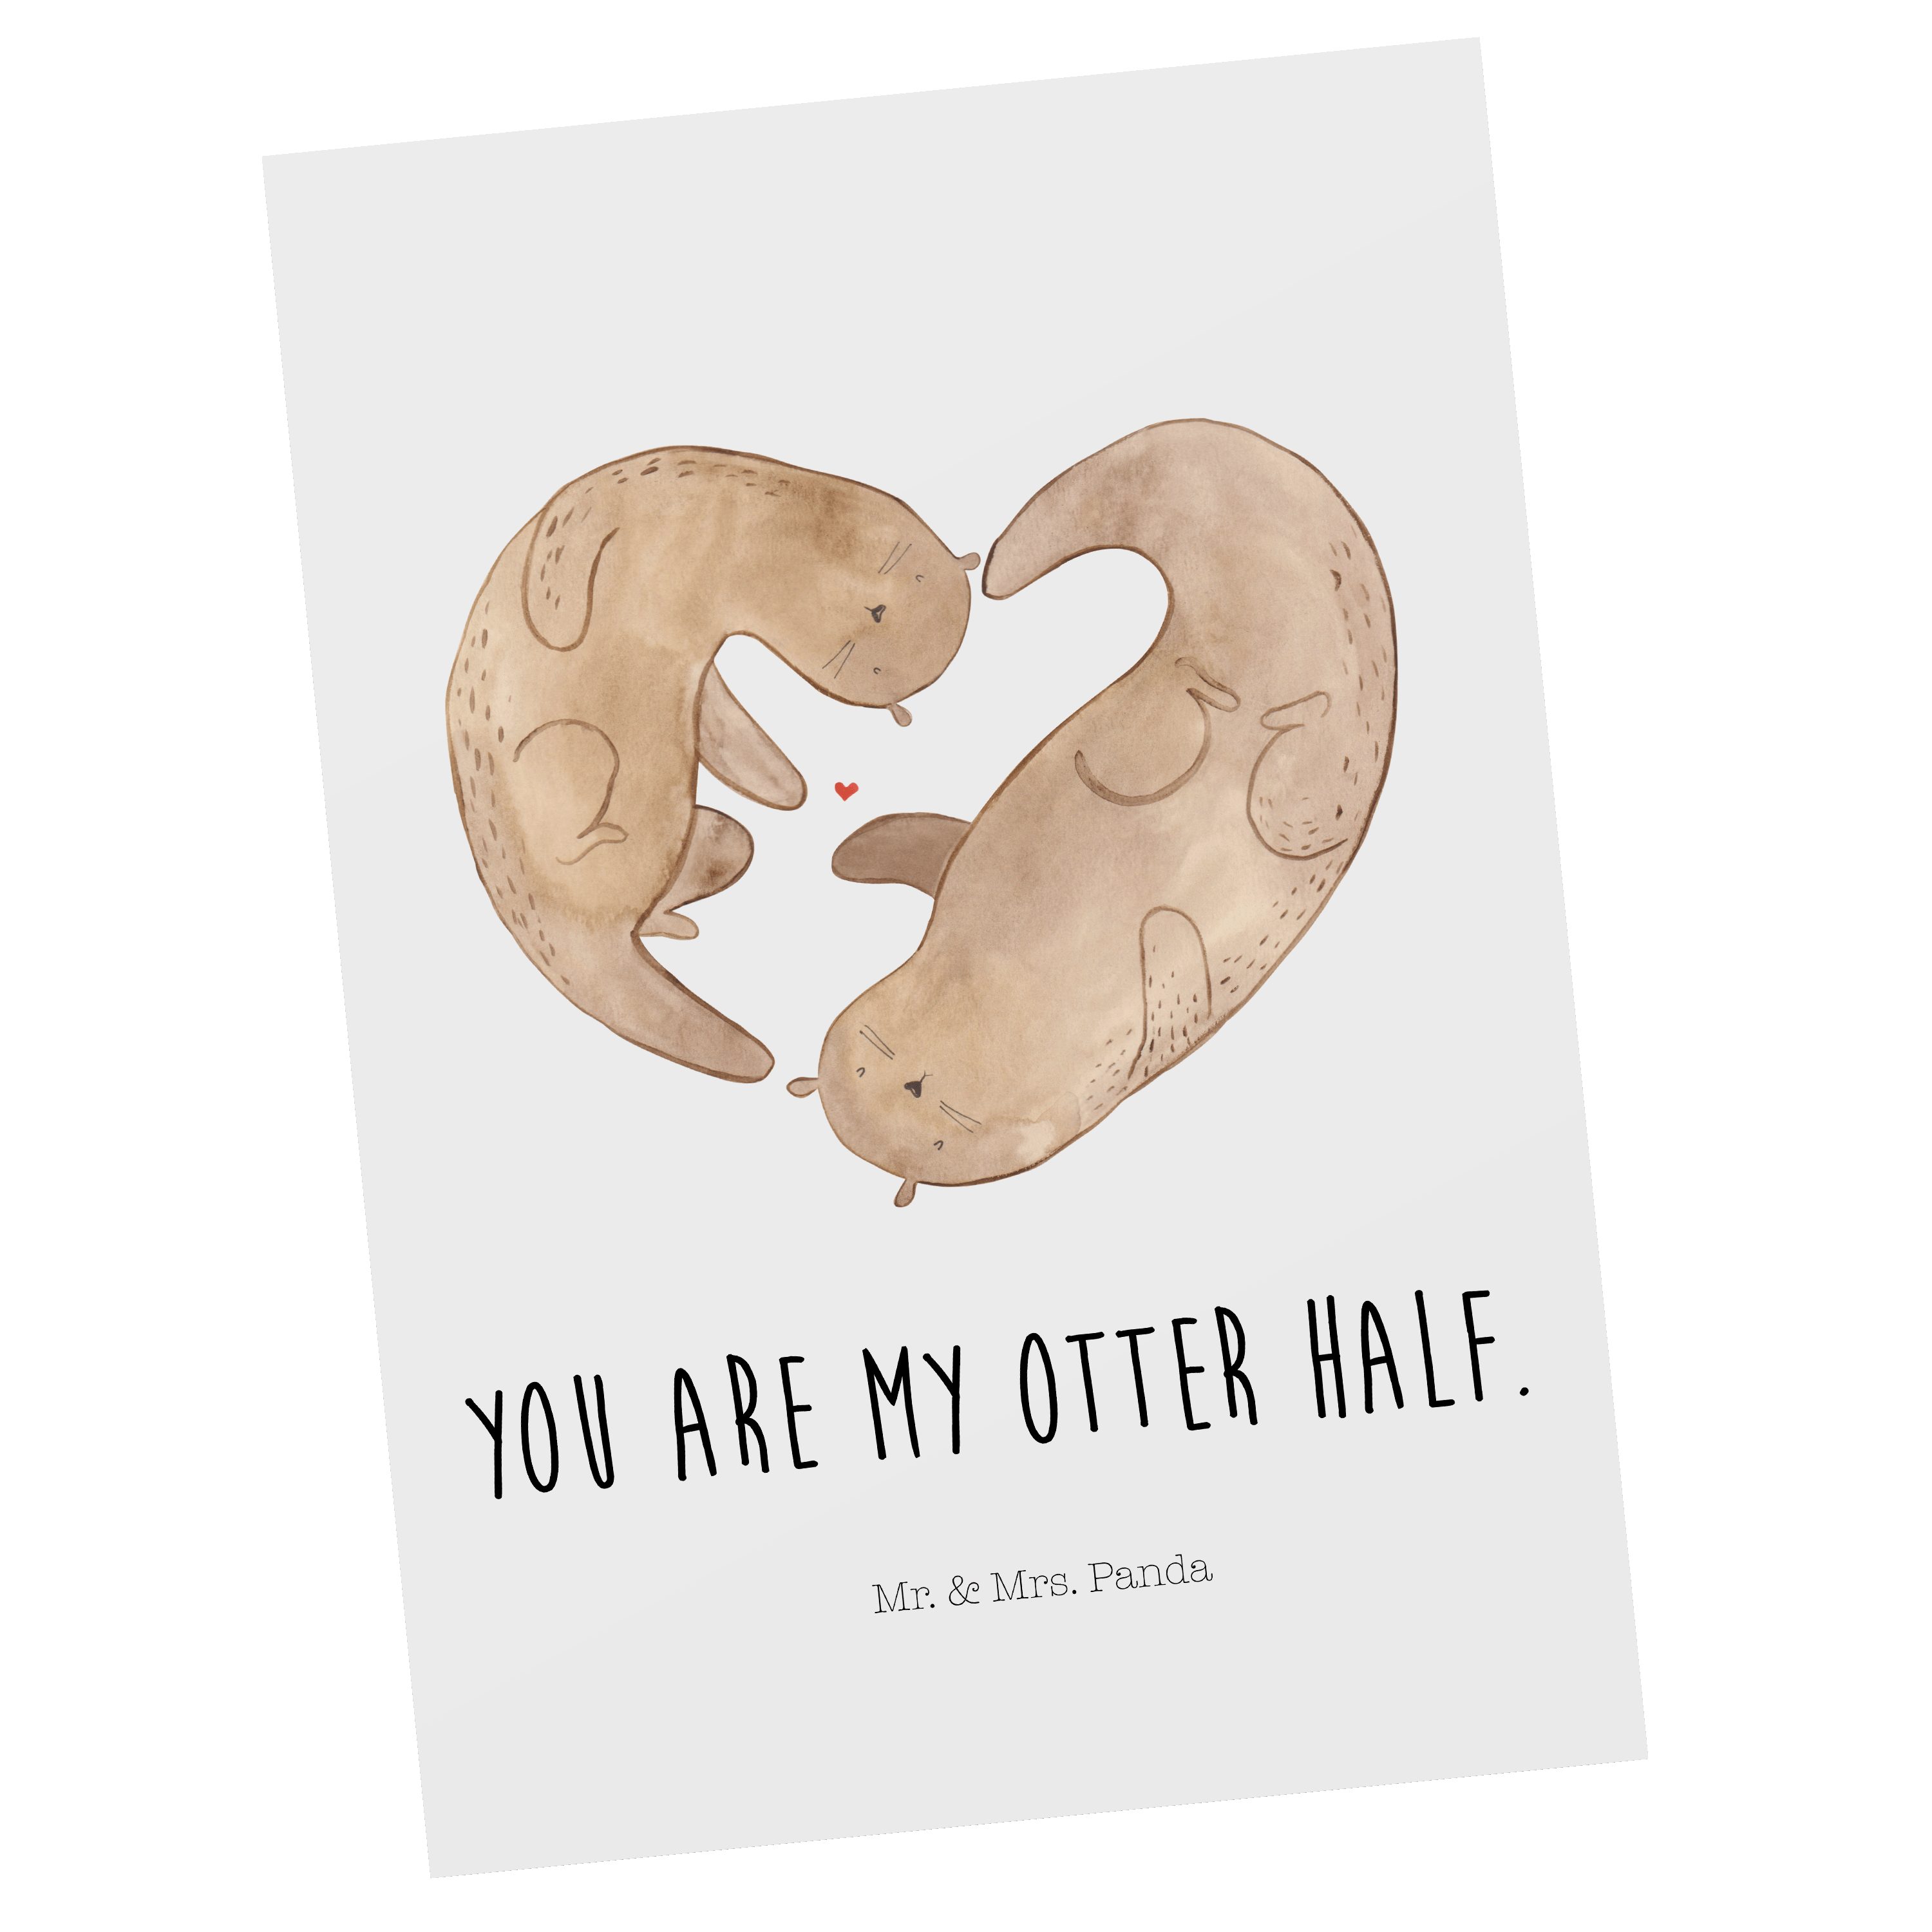 Mr. & Mrs. Panda Postkarte Otter Herz - Weiß - Geschenk, Geburtstagskarte, gemeinsames Leben, Ge